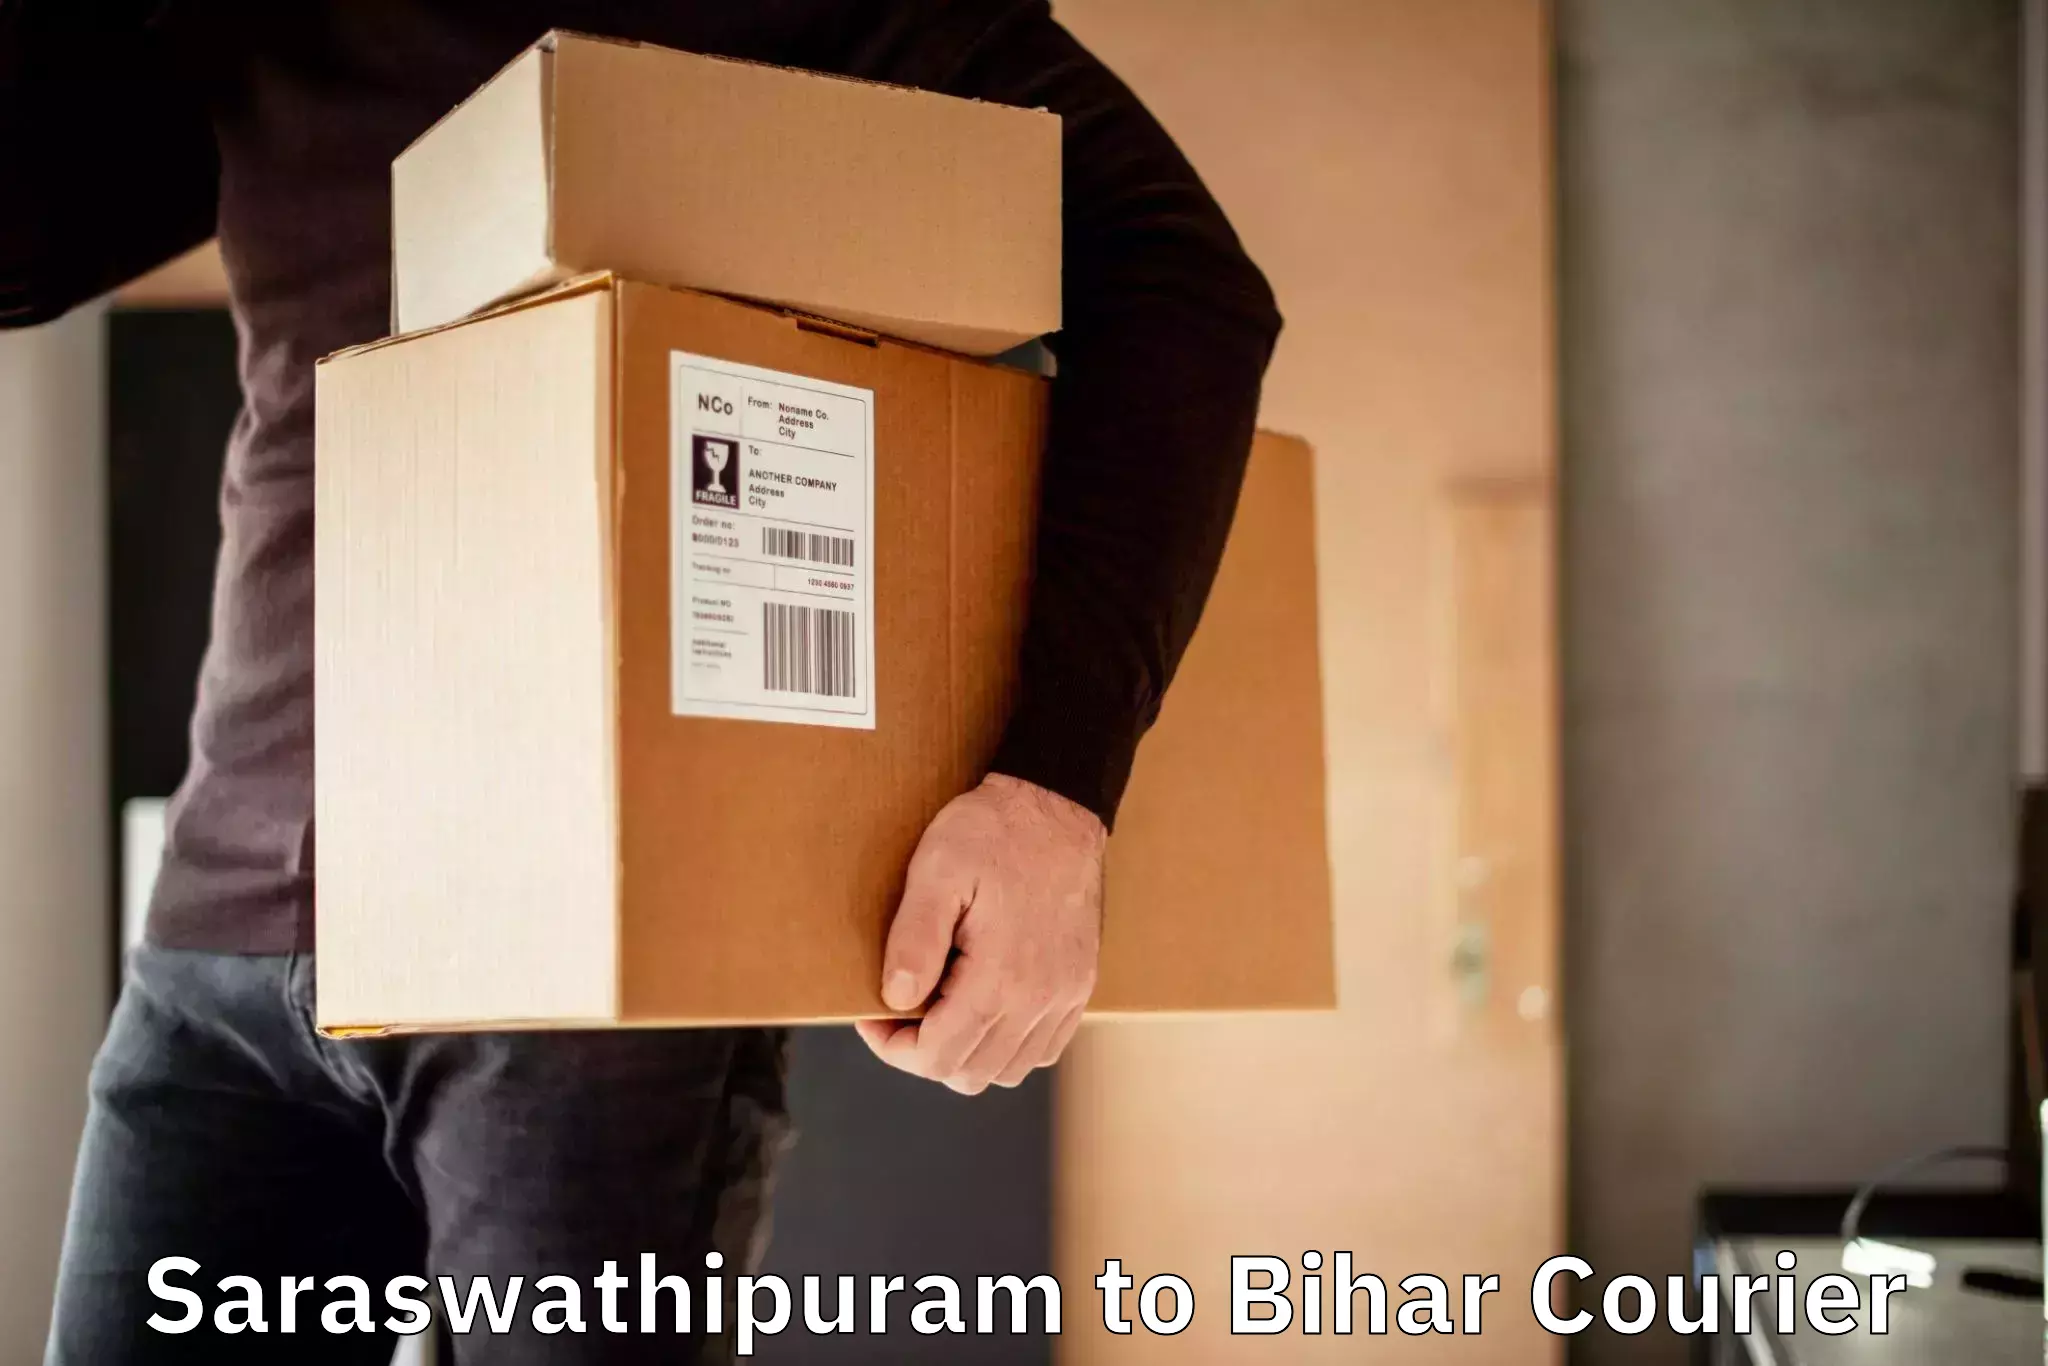 Efficient parcel tracking Saraswathipuram to Fatwah